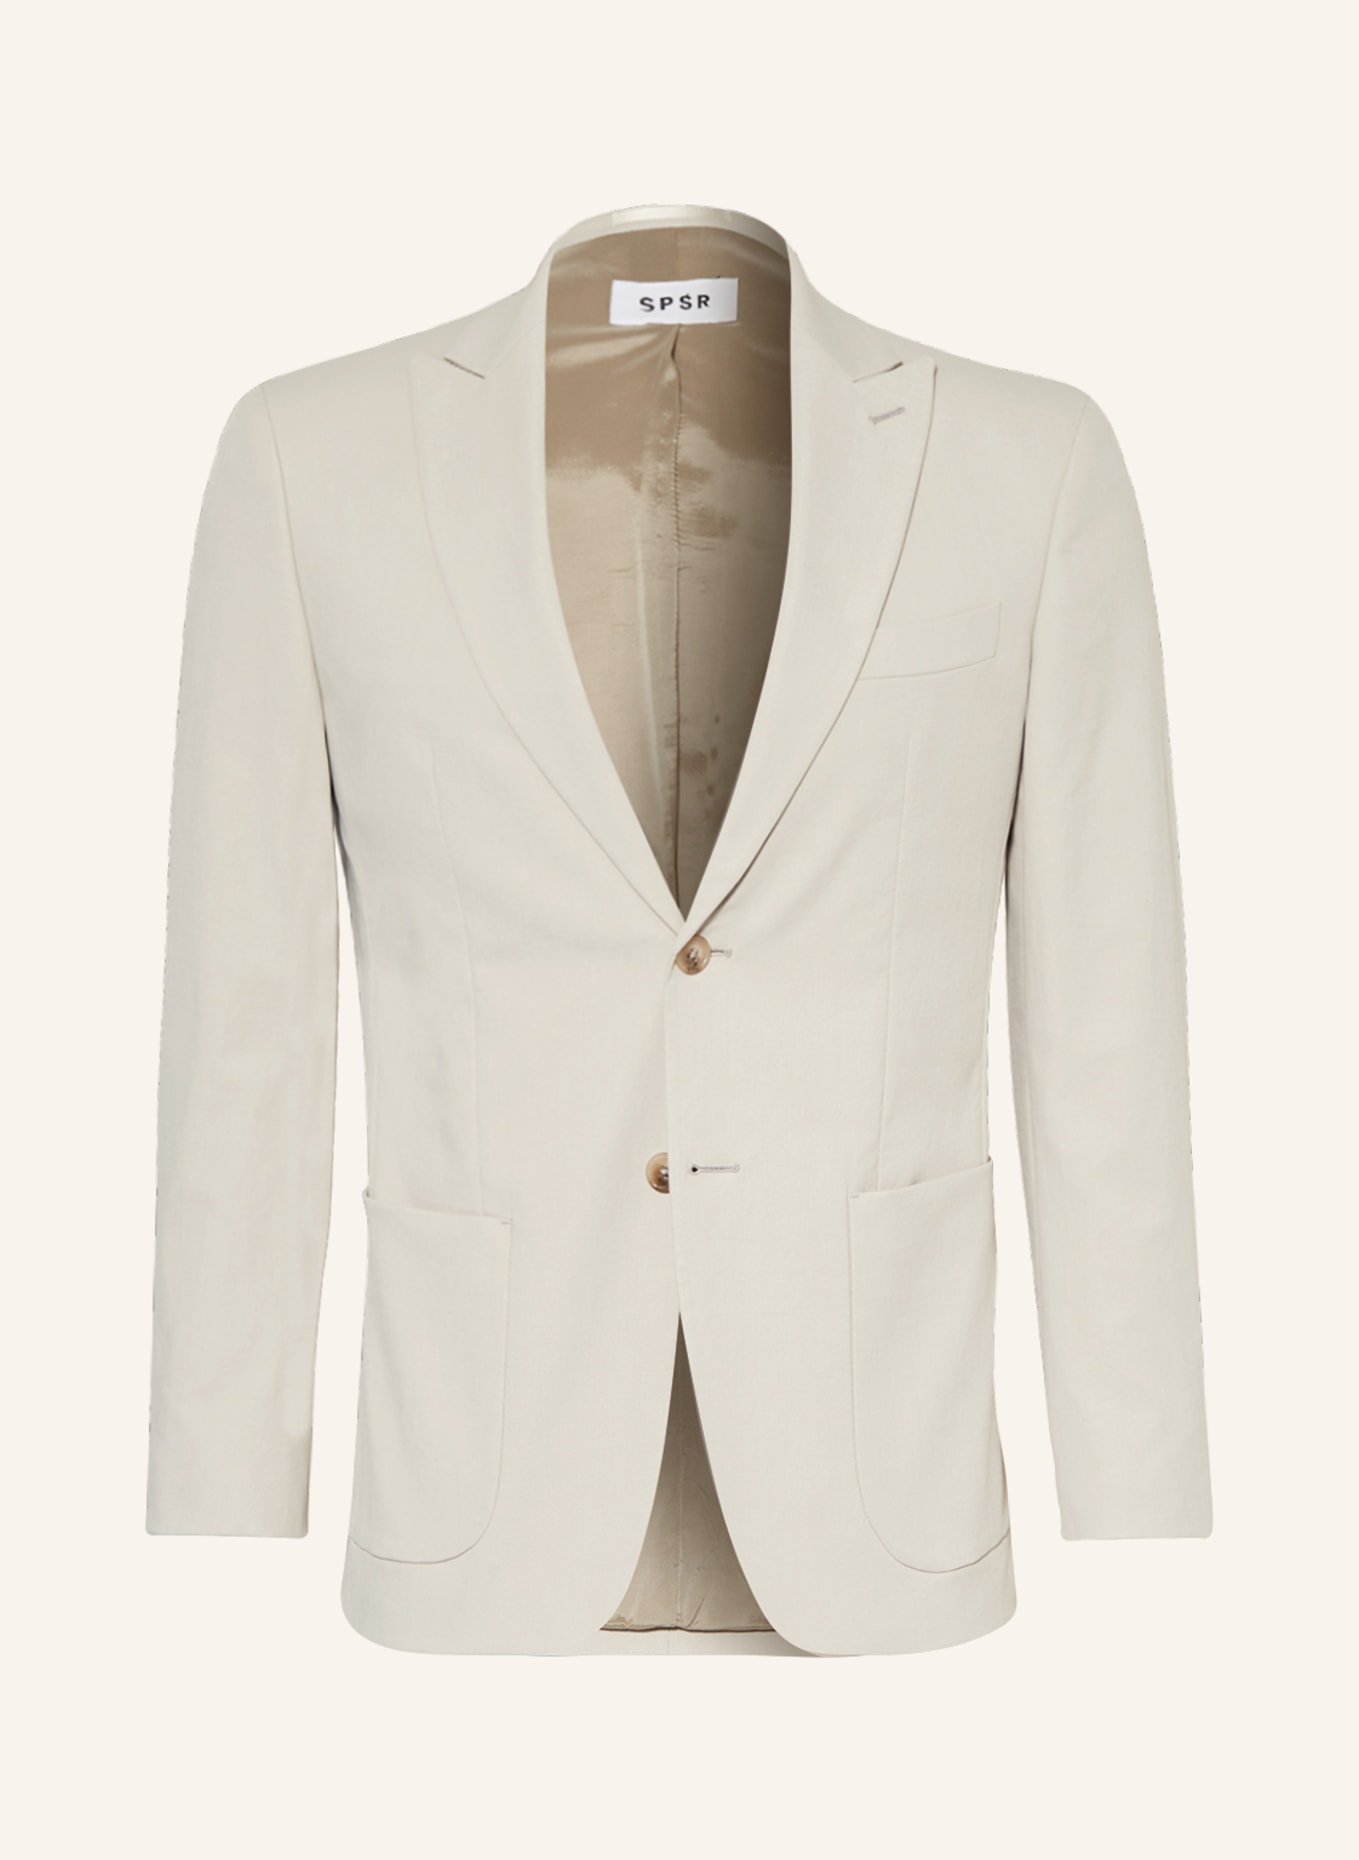 SPSR Suit jacket extra slim fit, Color: BEIGE (Image 1)